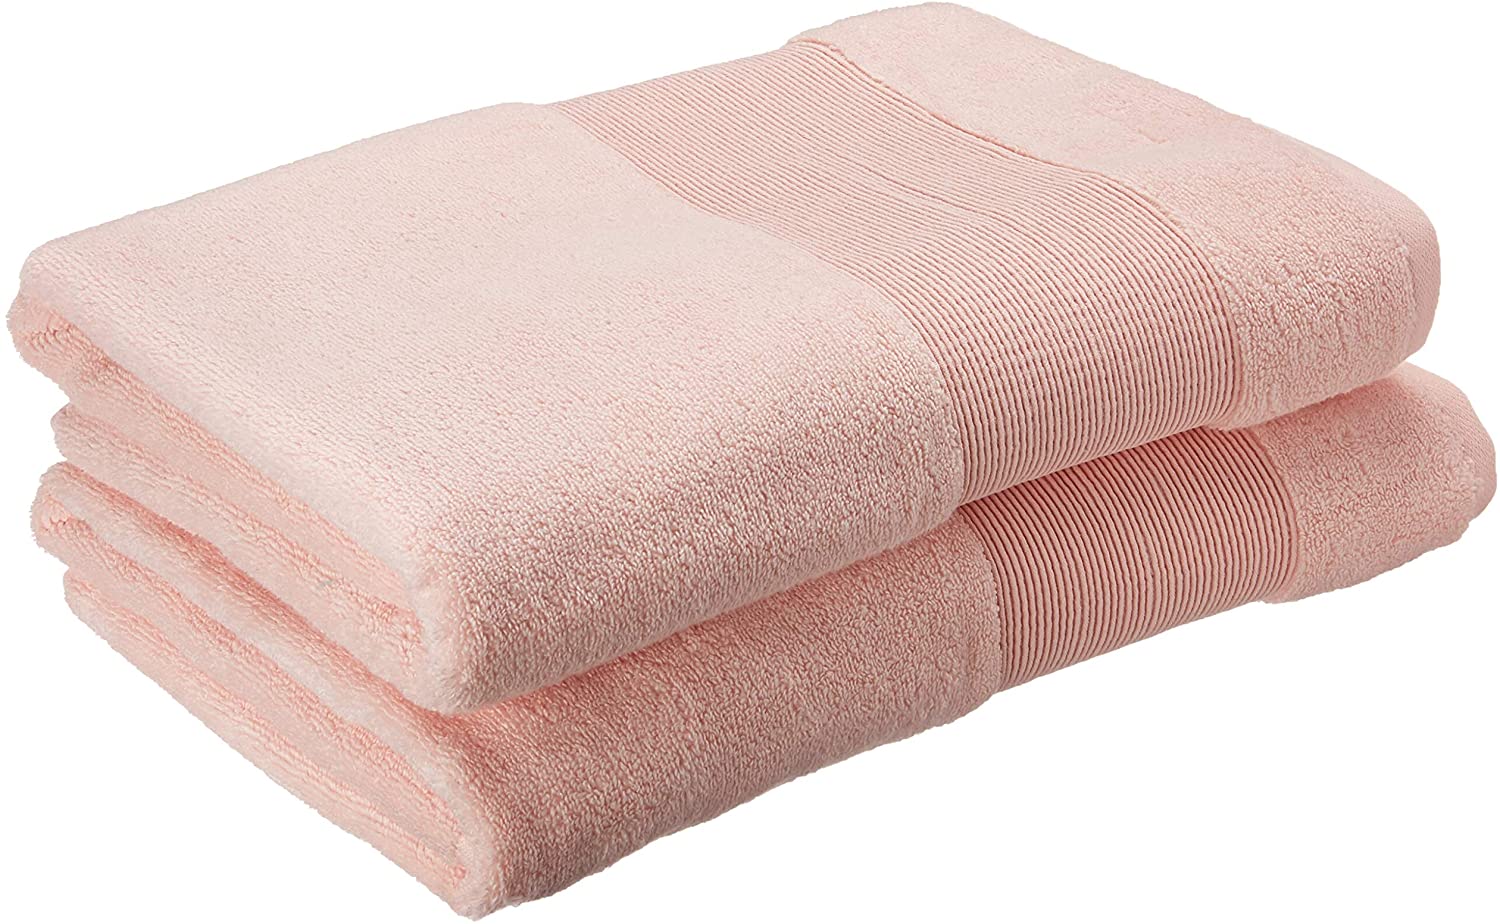 Modern Threads Air Cloud 6-Piece Towel Set